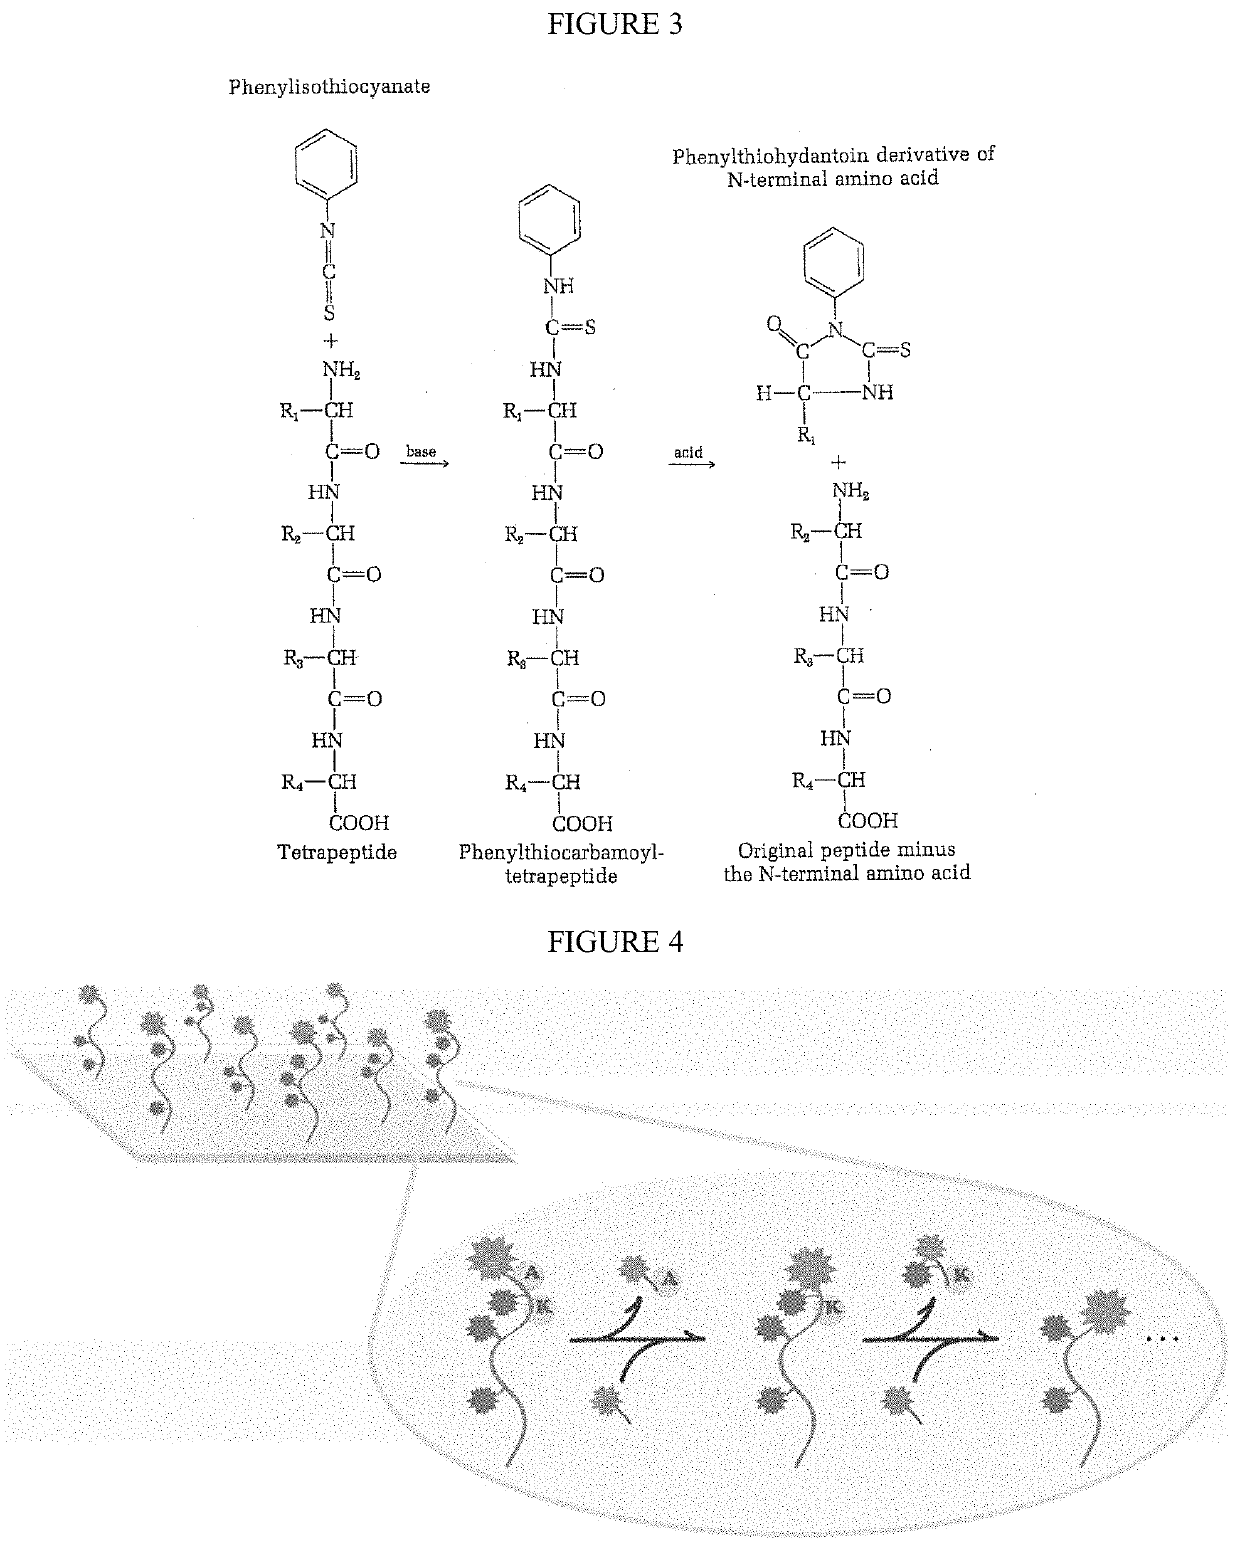 Single molecule peptide sequencing